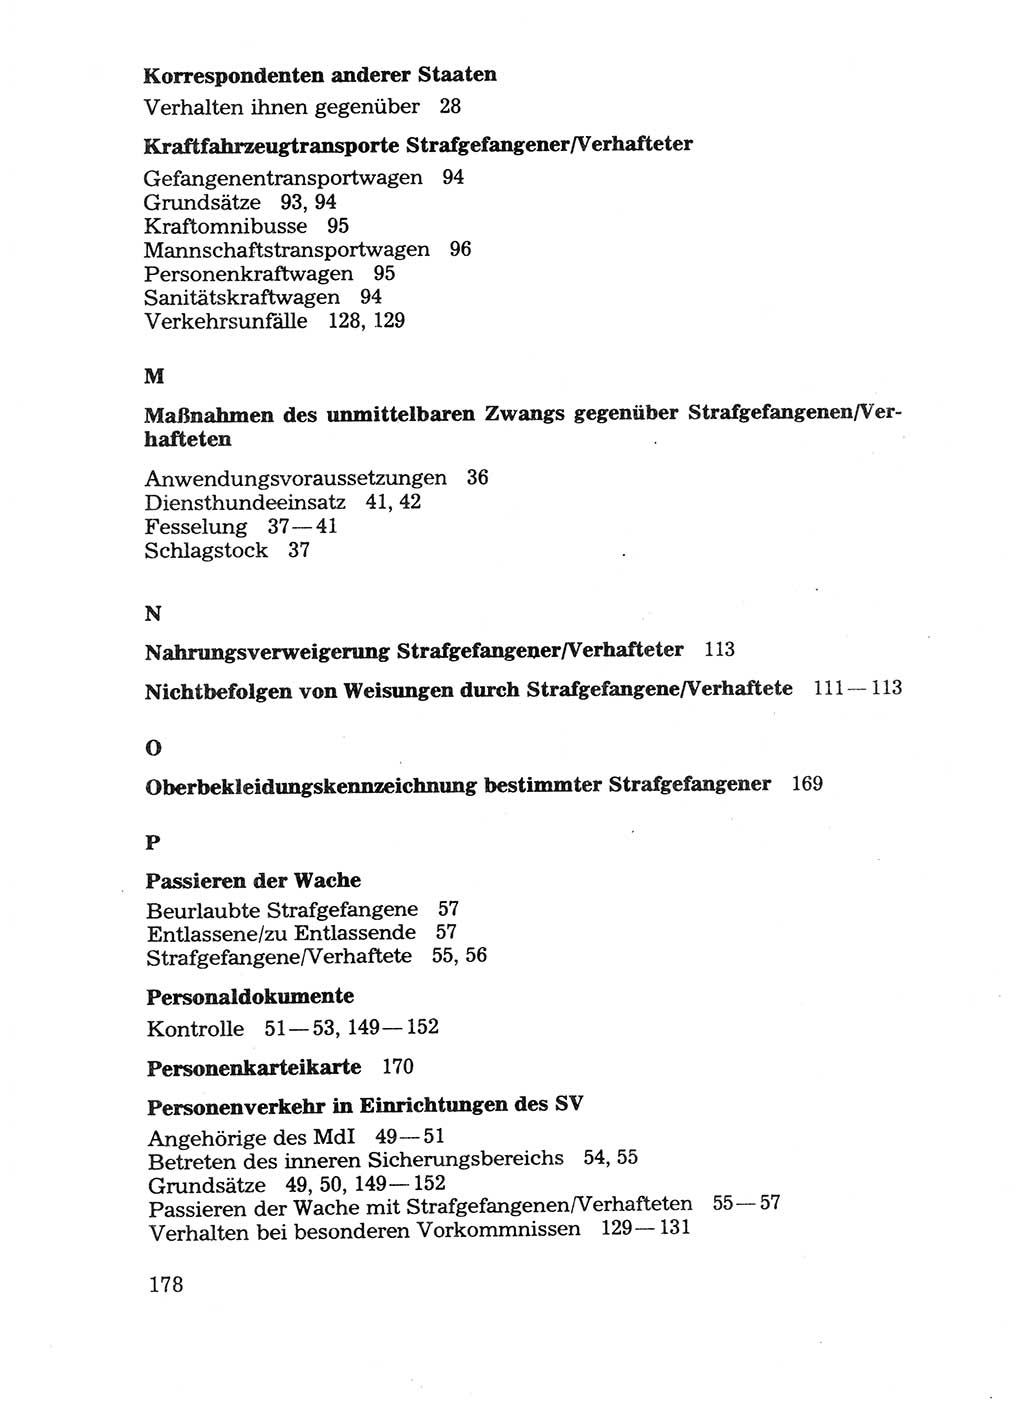 Handbuch für operative Dienste, Abteilung Strafvollzug (SV) [Ministerium des Innern (MdI) Deutsche Demokratische Republik (DDR)] 1981, Seite 178 (Hb. op. D. Abt. SV MdI DDR 1981, S. 178)